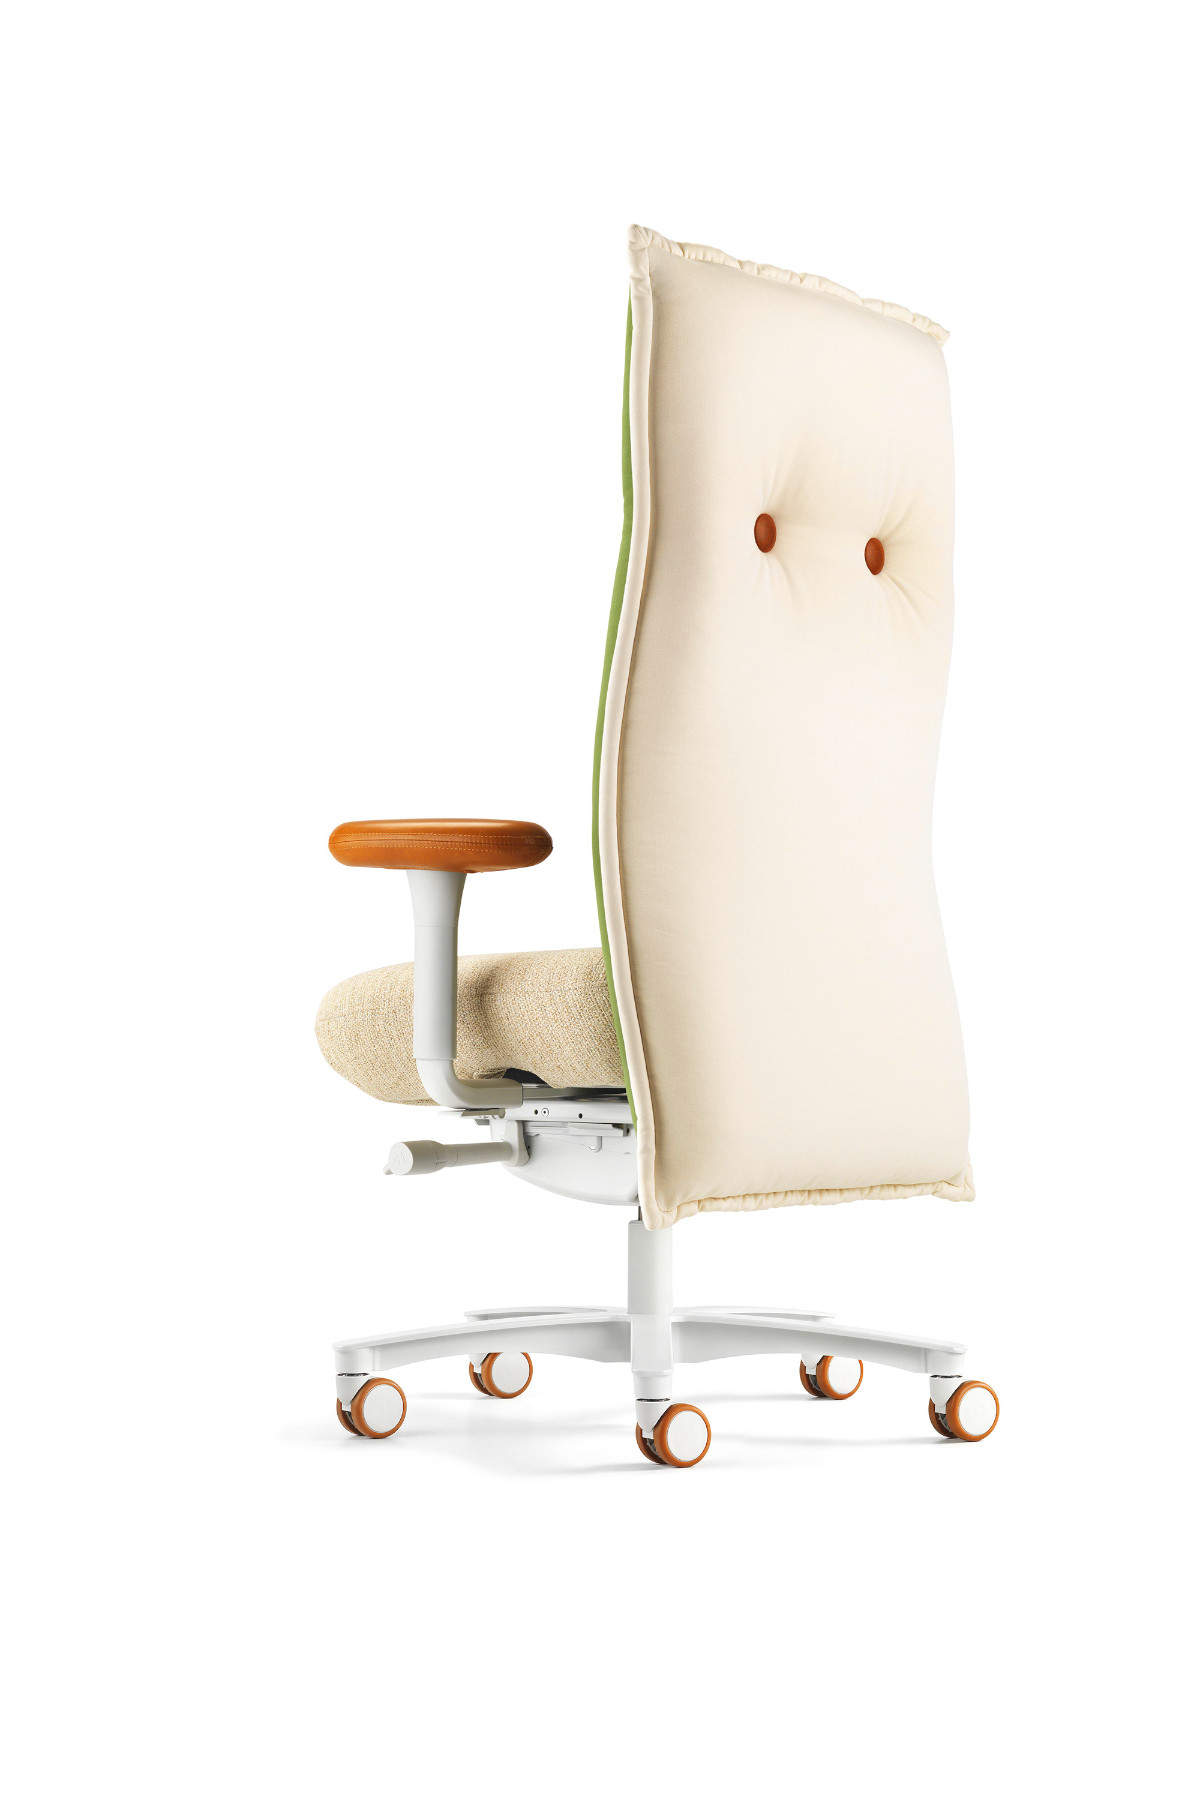 Löffler Brasilian Chair Bürodrehstuhl hohe Rückenlehne